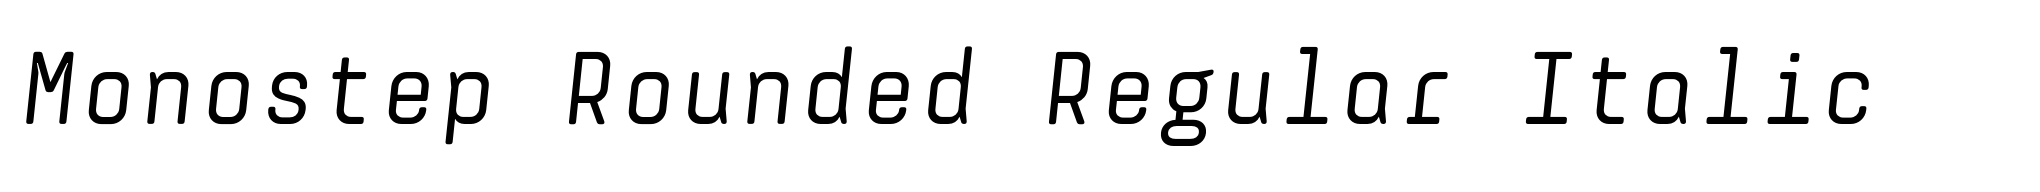 Monostep Rounded Regular Italic image